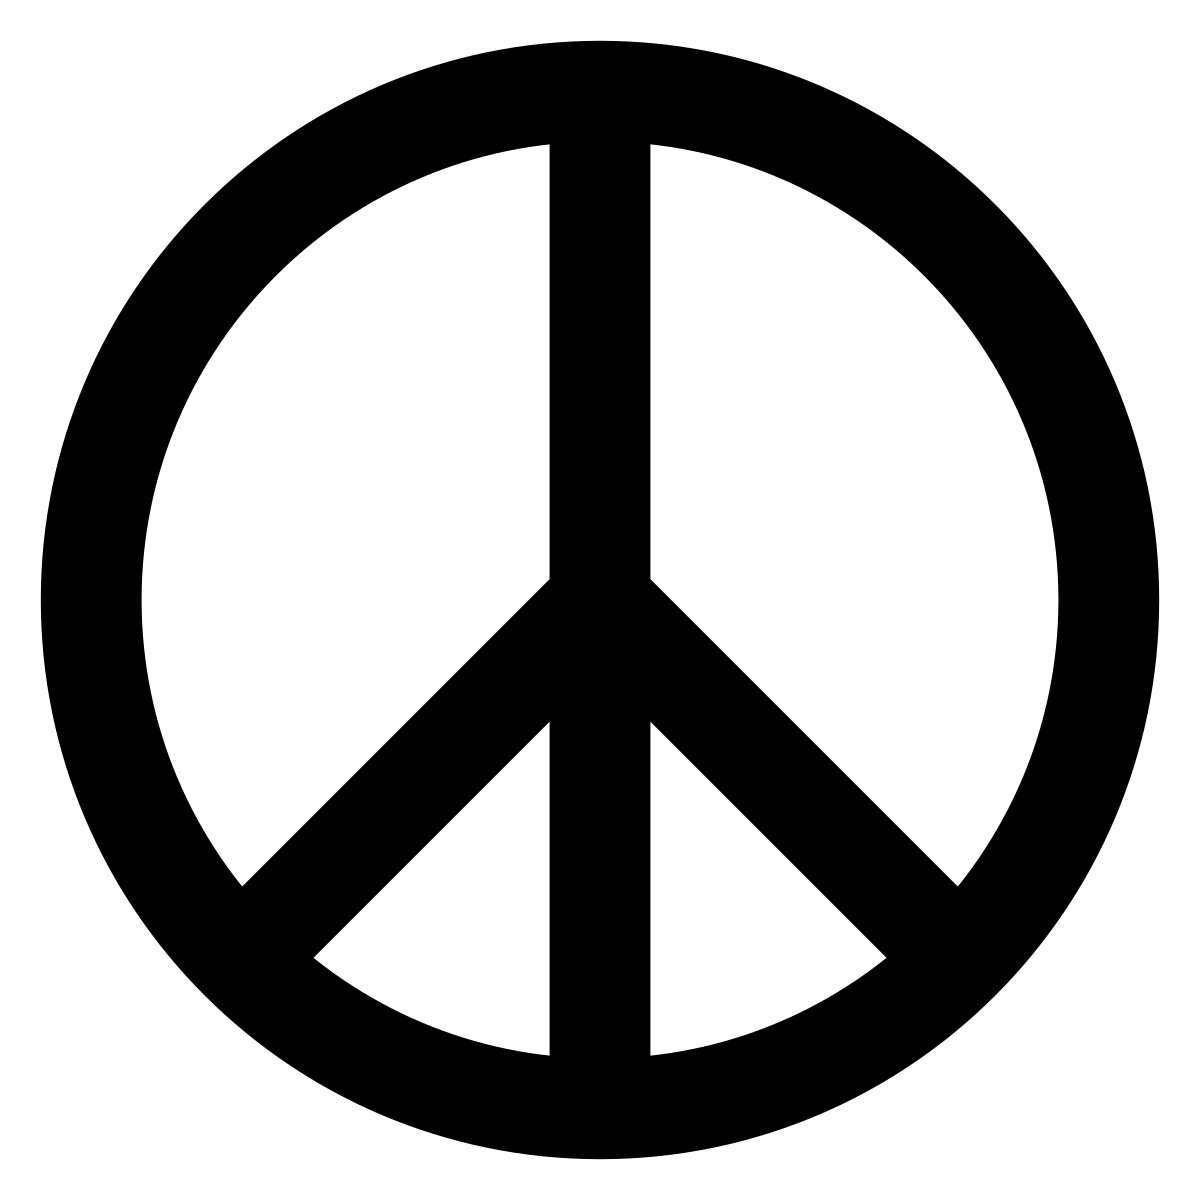 Hippy Logo - Peace symbols